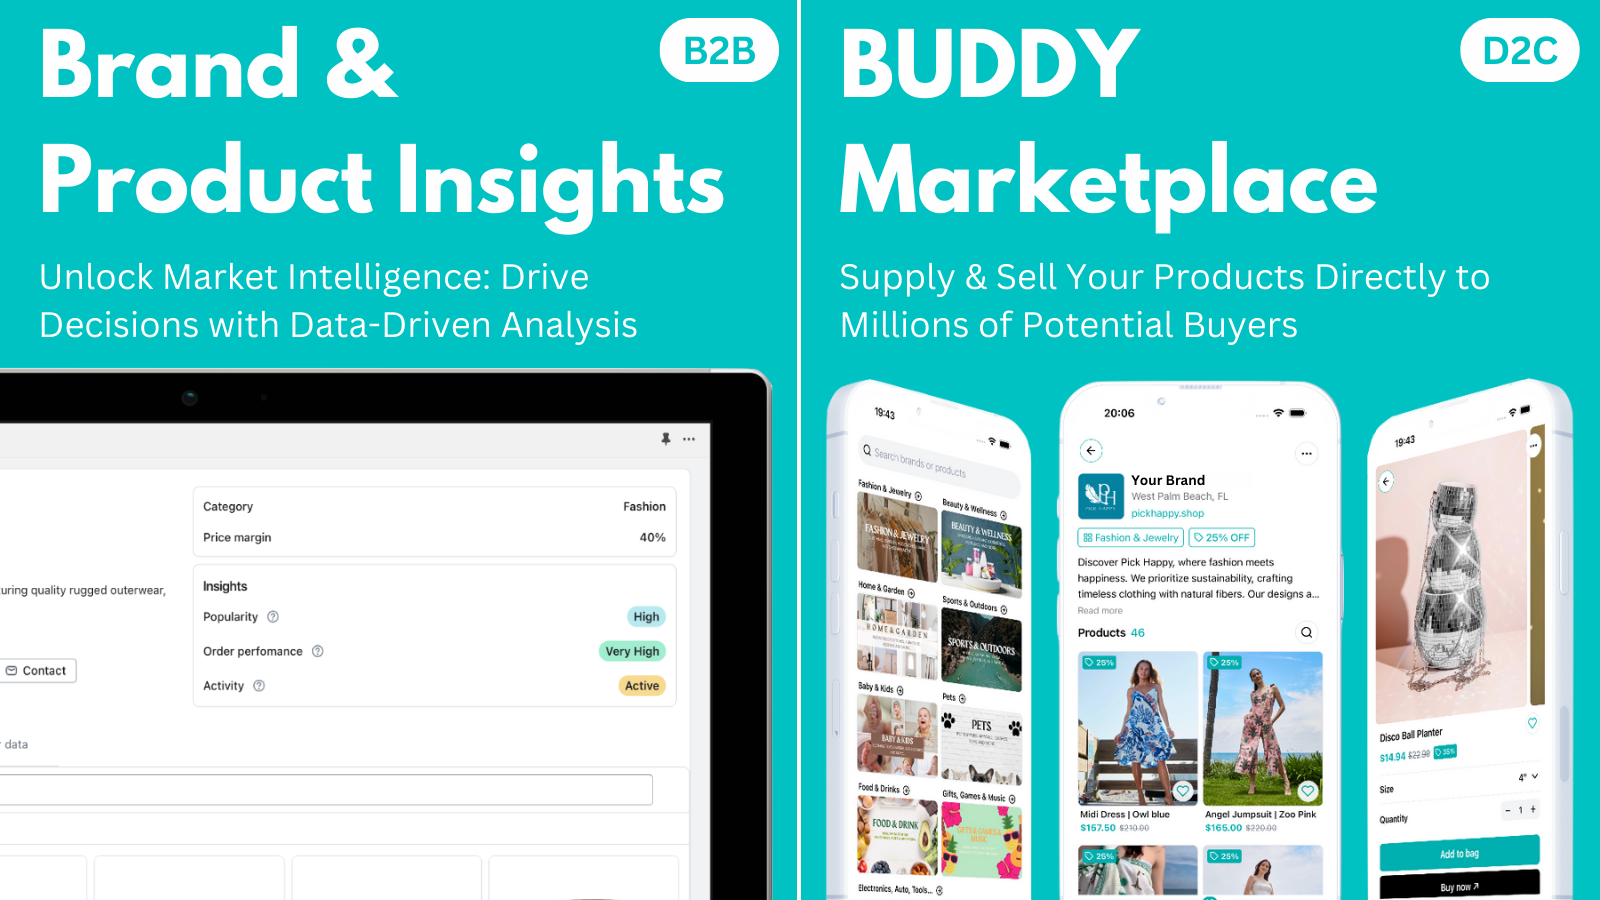 Marken- & Produkt-Einblicke und BUDDY-Marktplatz